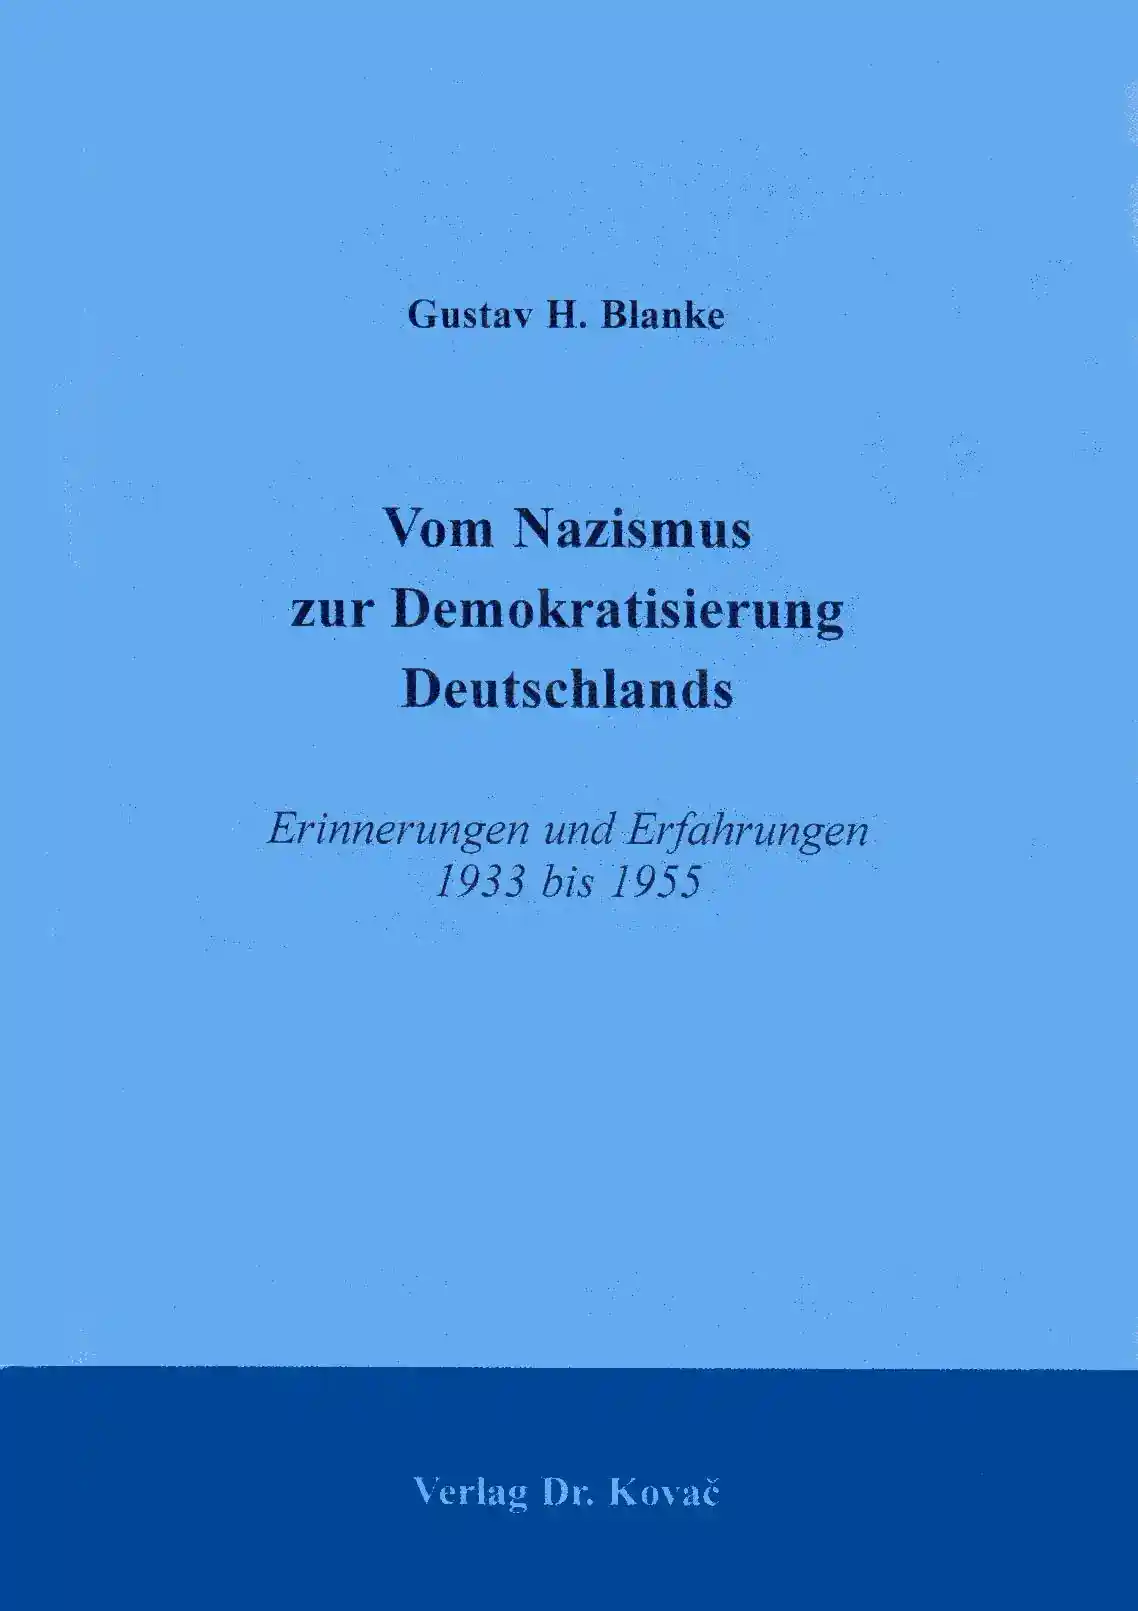 Vom Nazismus zur Demokratisierung Deutschlands: Erinnerungen und Erfahrungen 1933 bis 1955 (Lebenserinnerung)